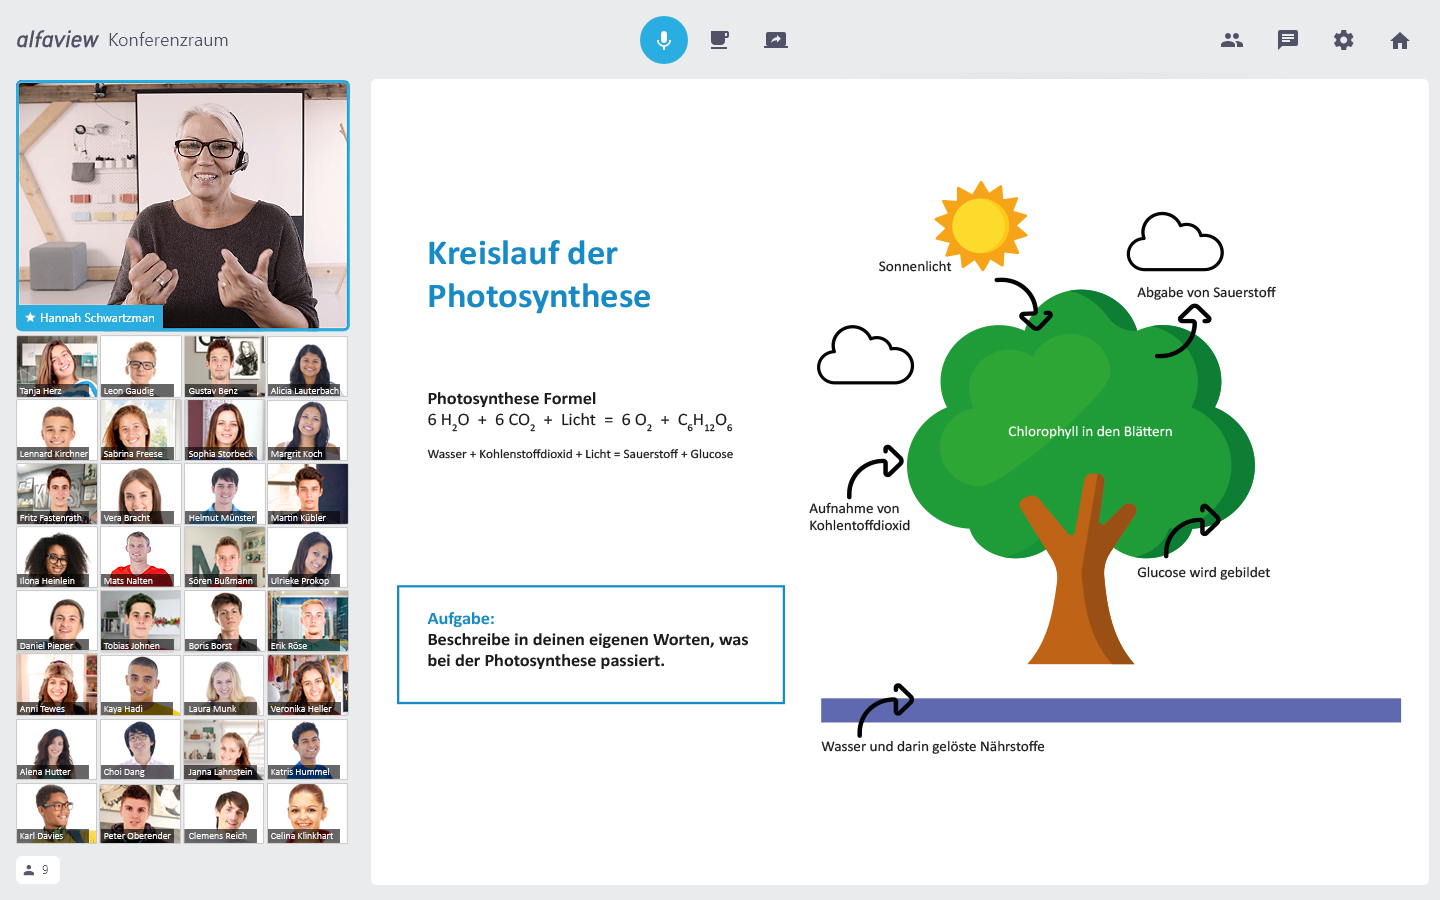 alfaview raum, in dem die Lehrerin den Schülern den Kreislauf der Photosynthese erklärt